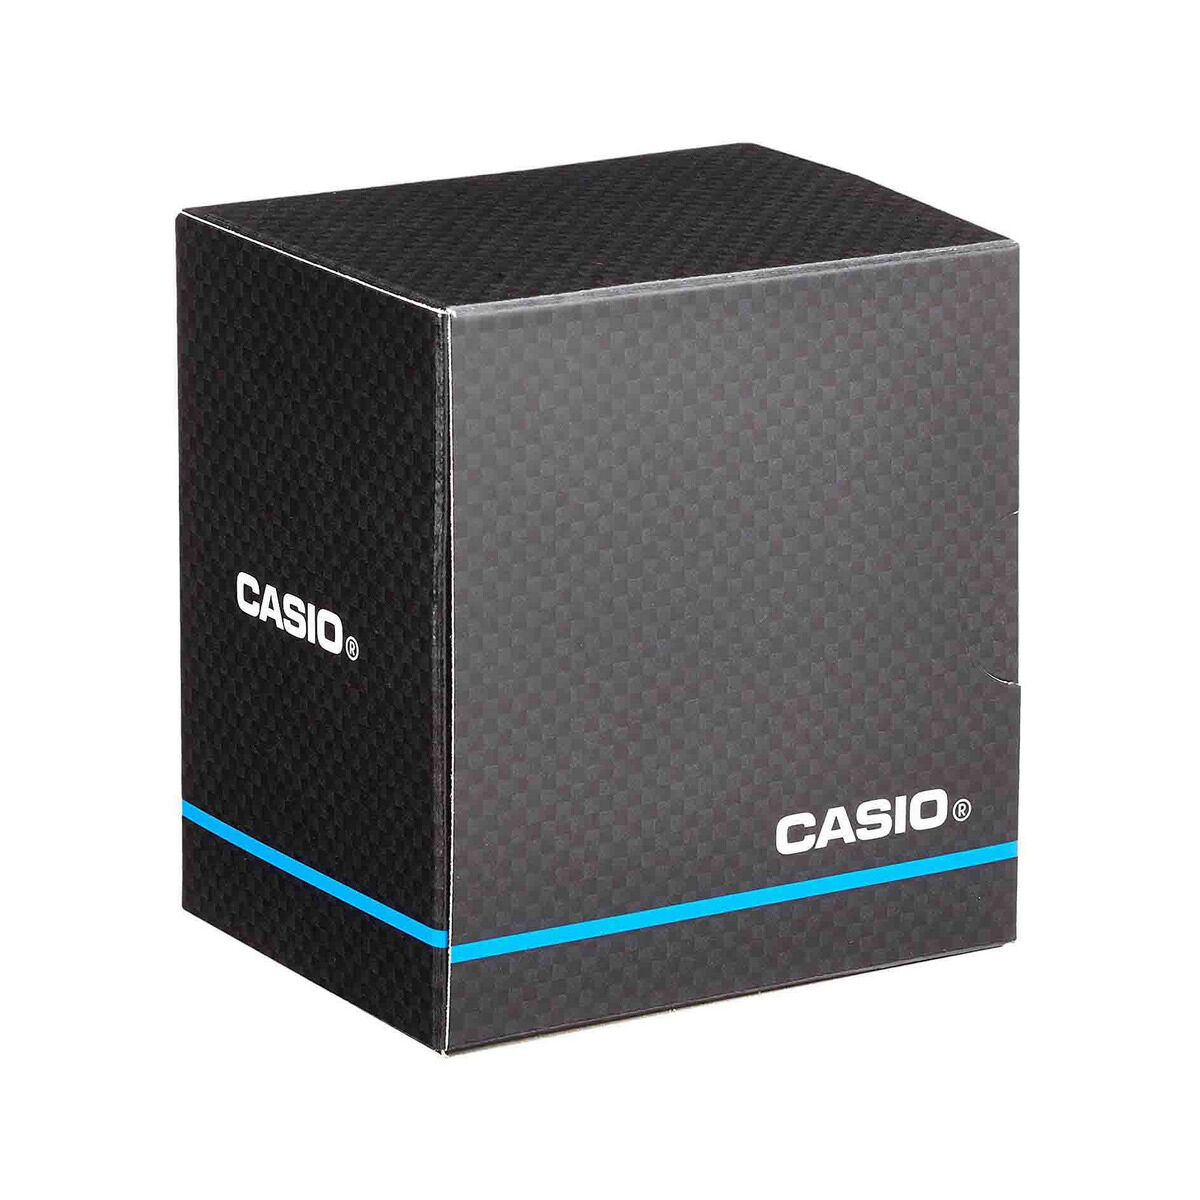 Osta tuote Naisten rannekellot Casio LTP-1234PGL-7A2EF verkkokaupastamme Korhone: Muoti & Asusteet 20% alennuksella koodilla VIIKONLOPPU